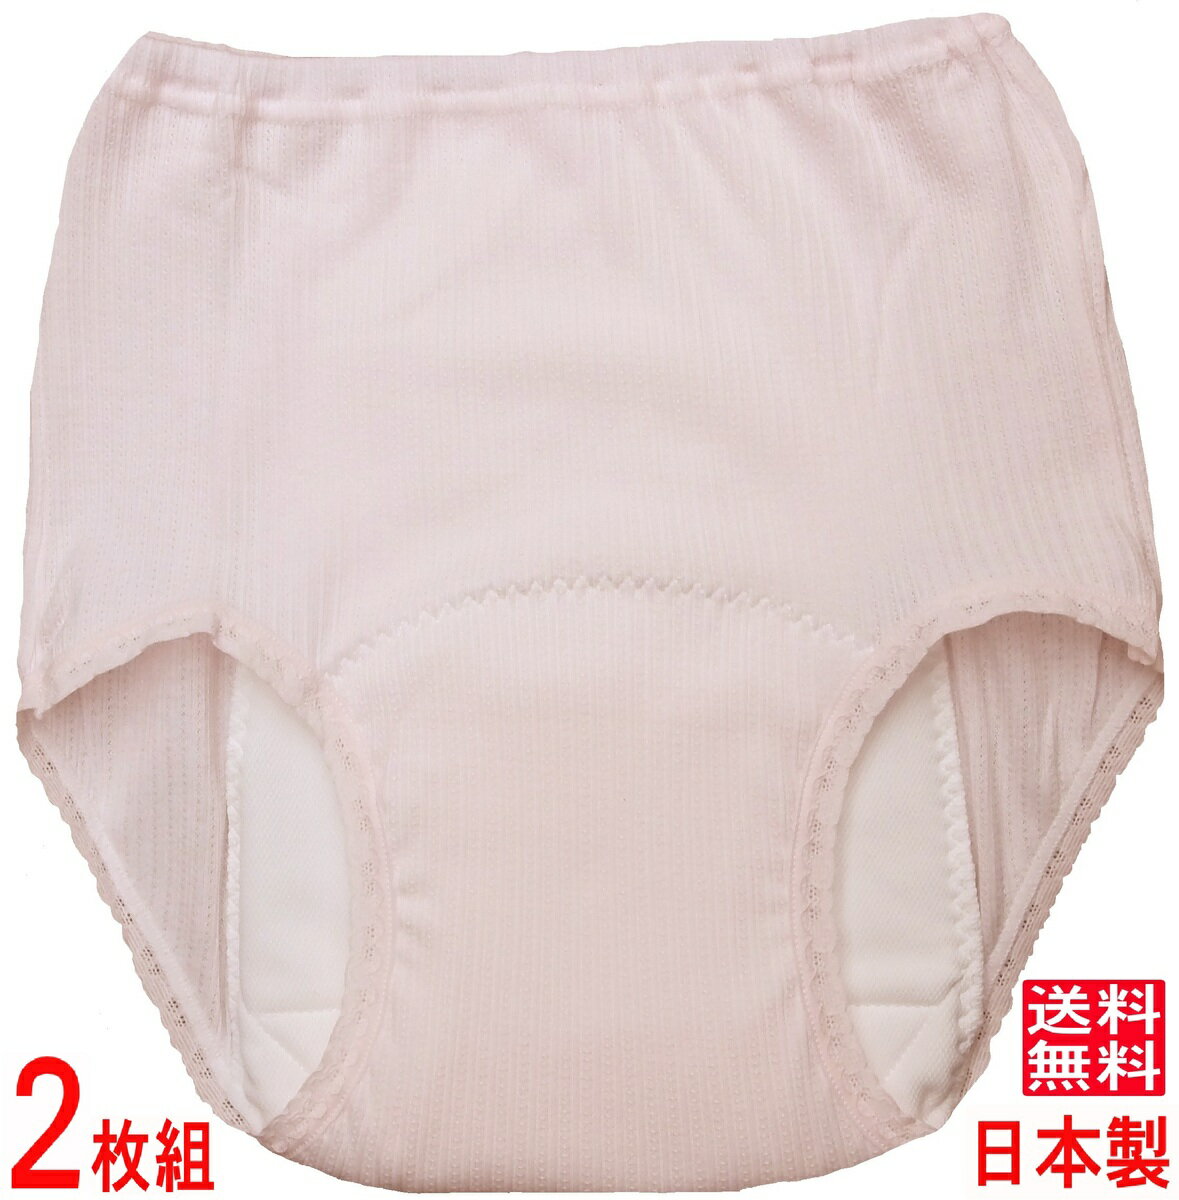 尿漏れパンツ 失禁パンツ 女性用 吸水150cc  日本製